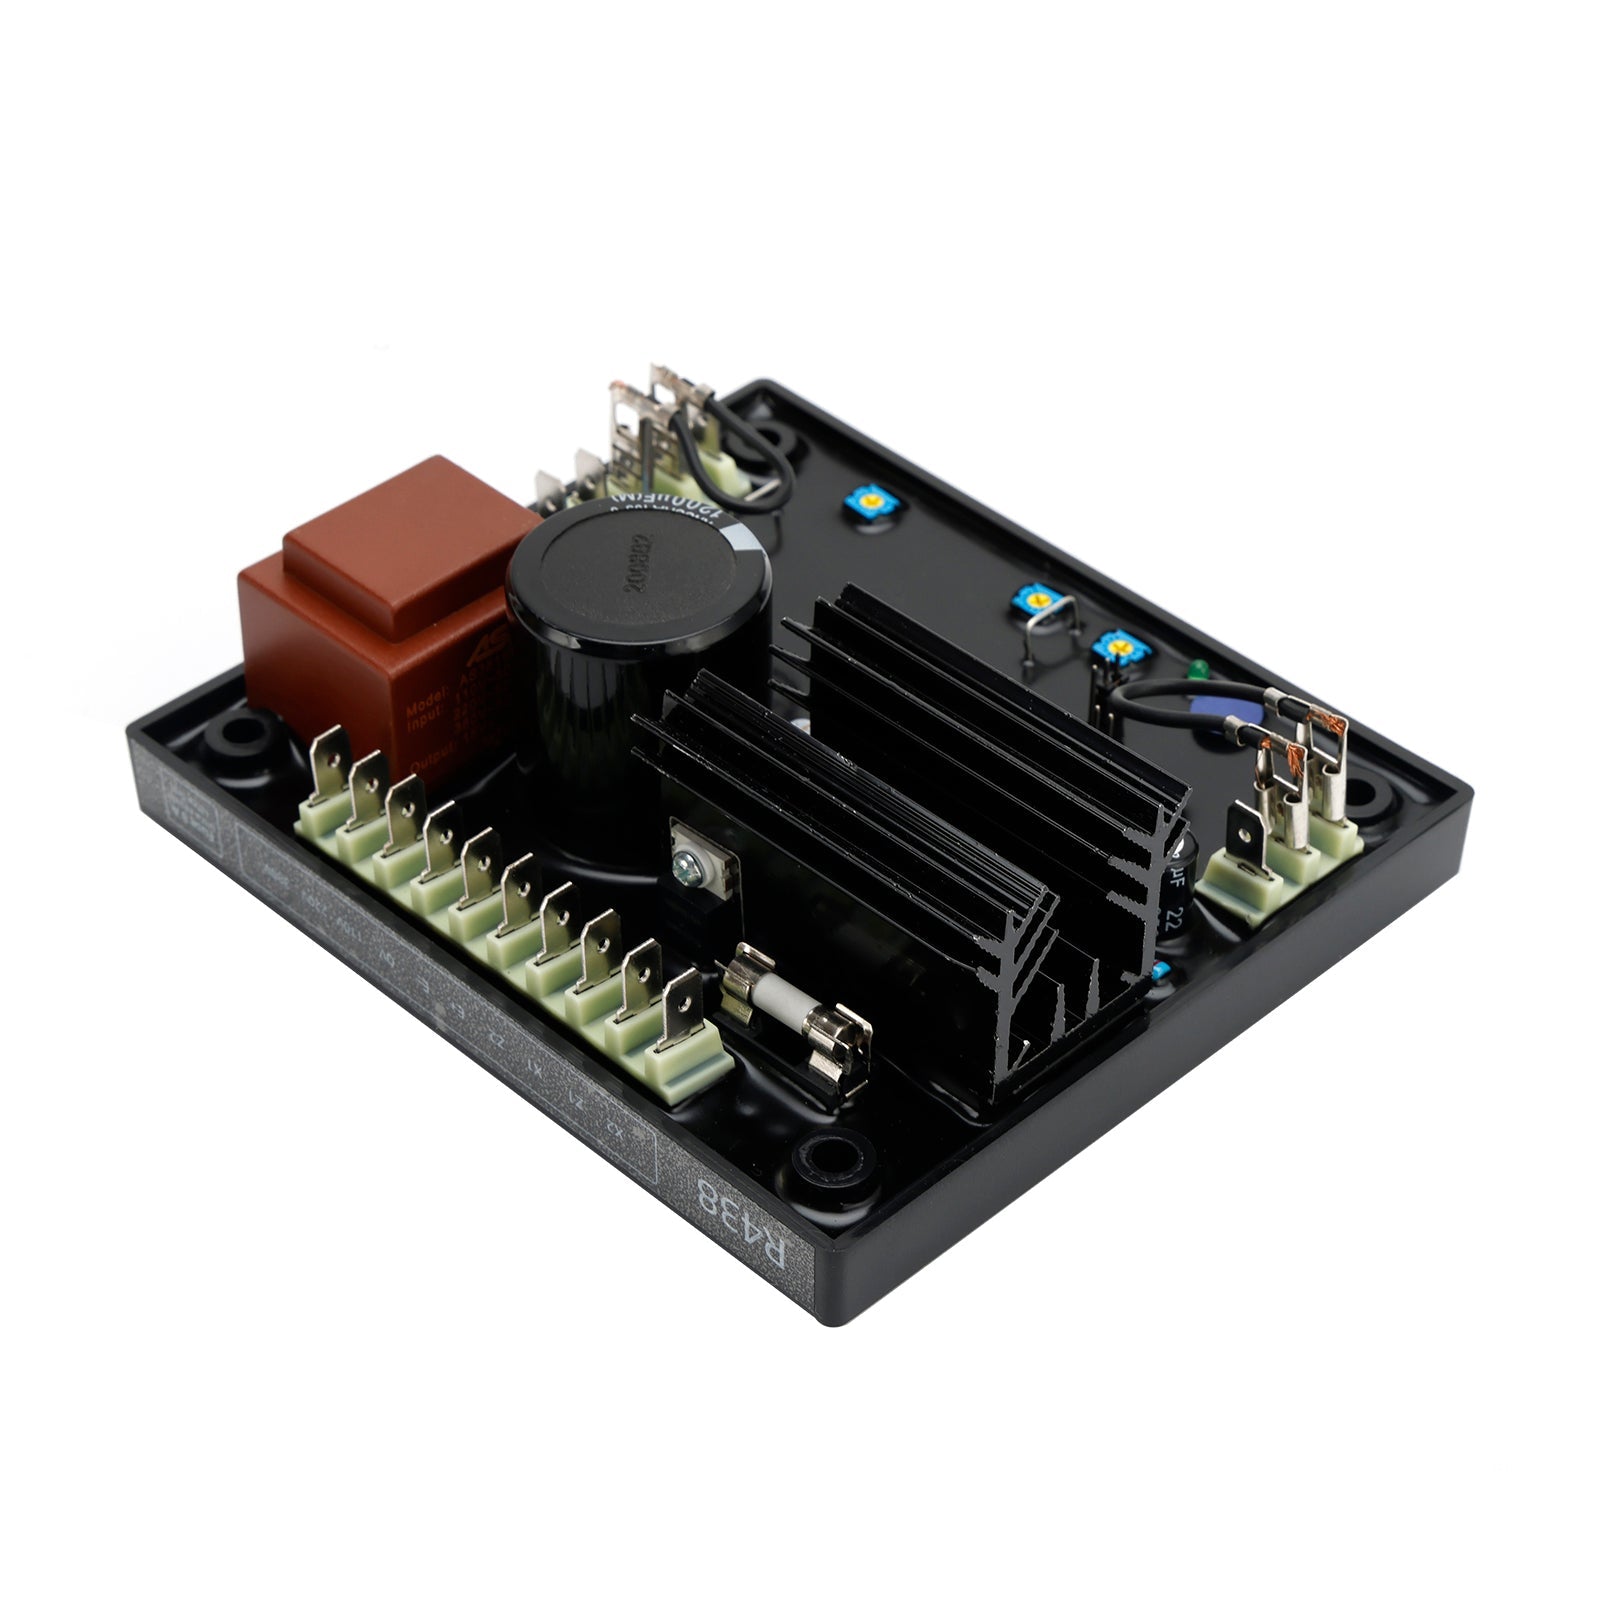 Régulateur de tension automatique AVR R438 compatible avec le générateur Leroy Somer